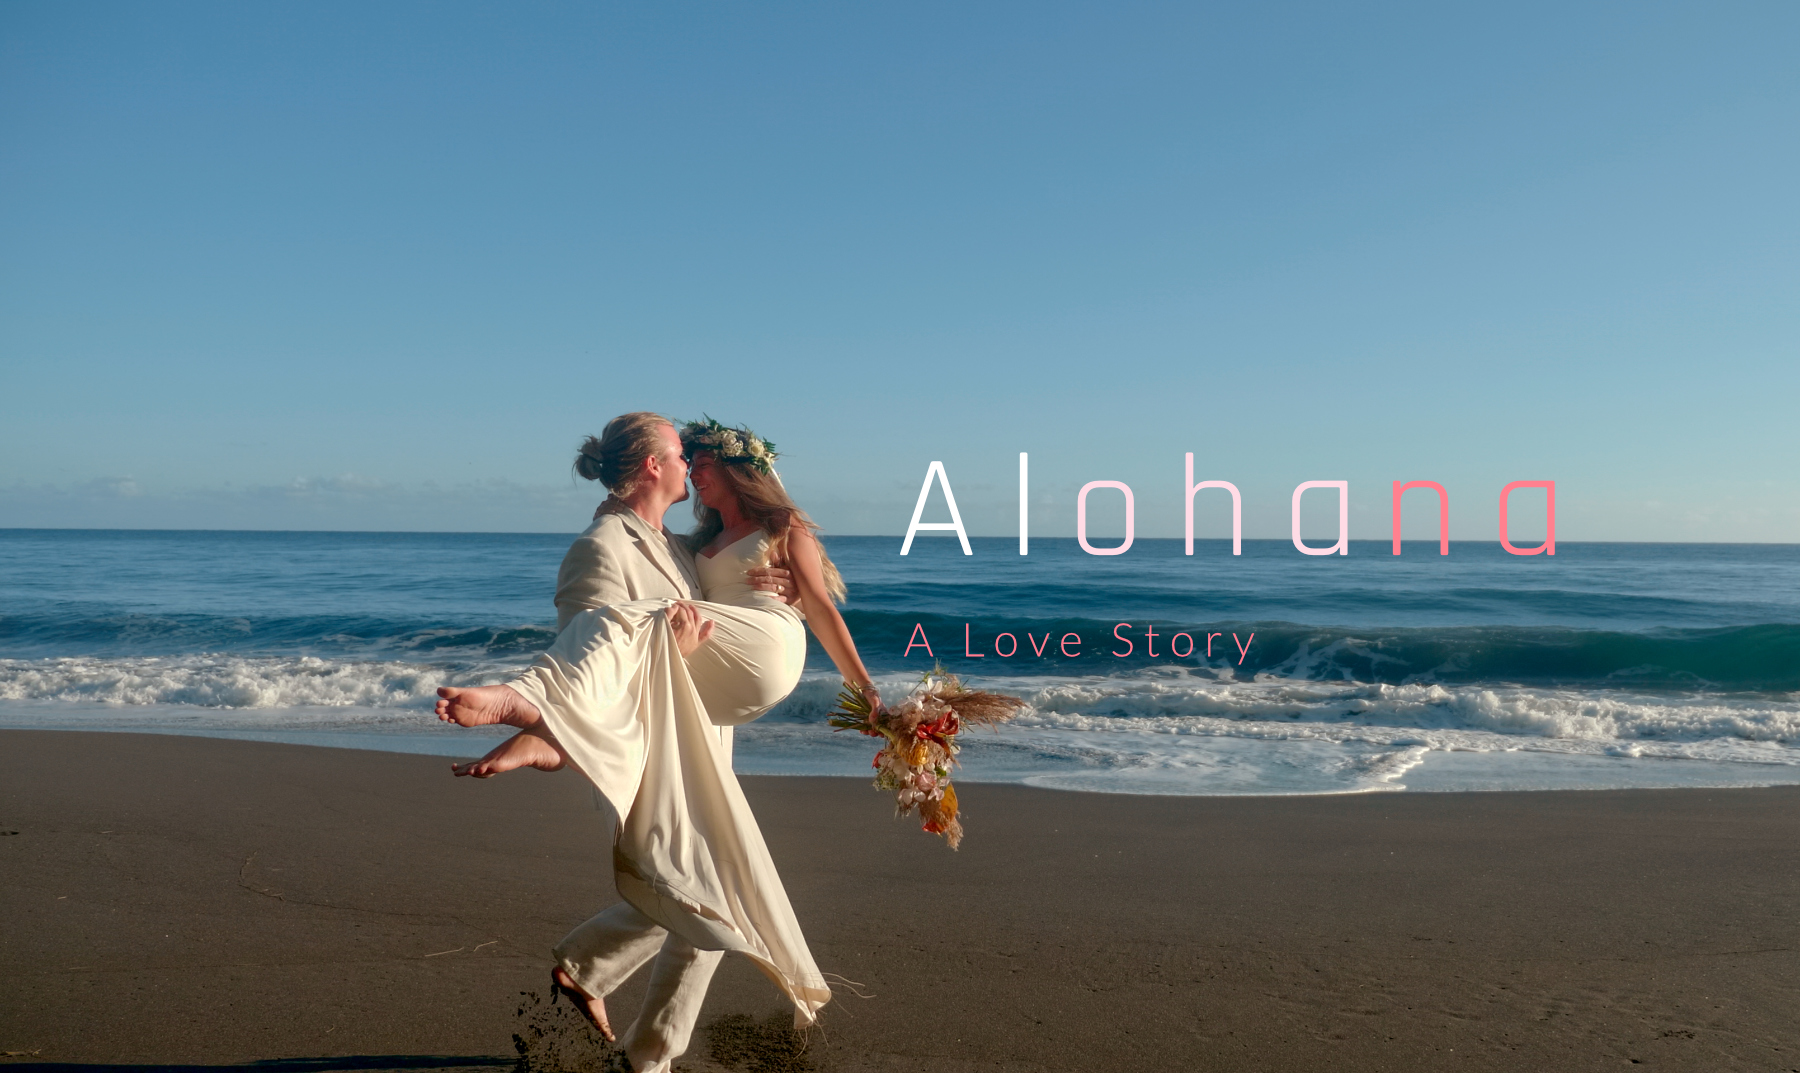 Epic, romantic elopement in Hawaii